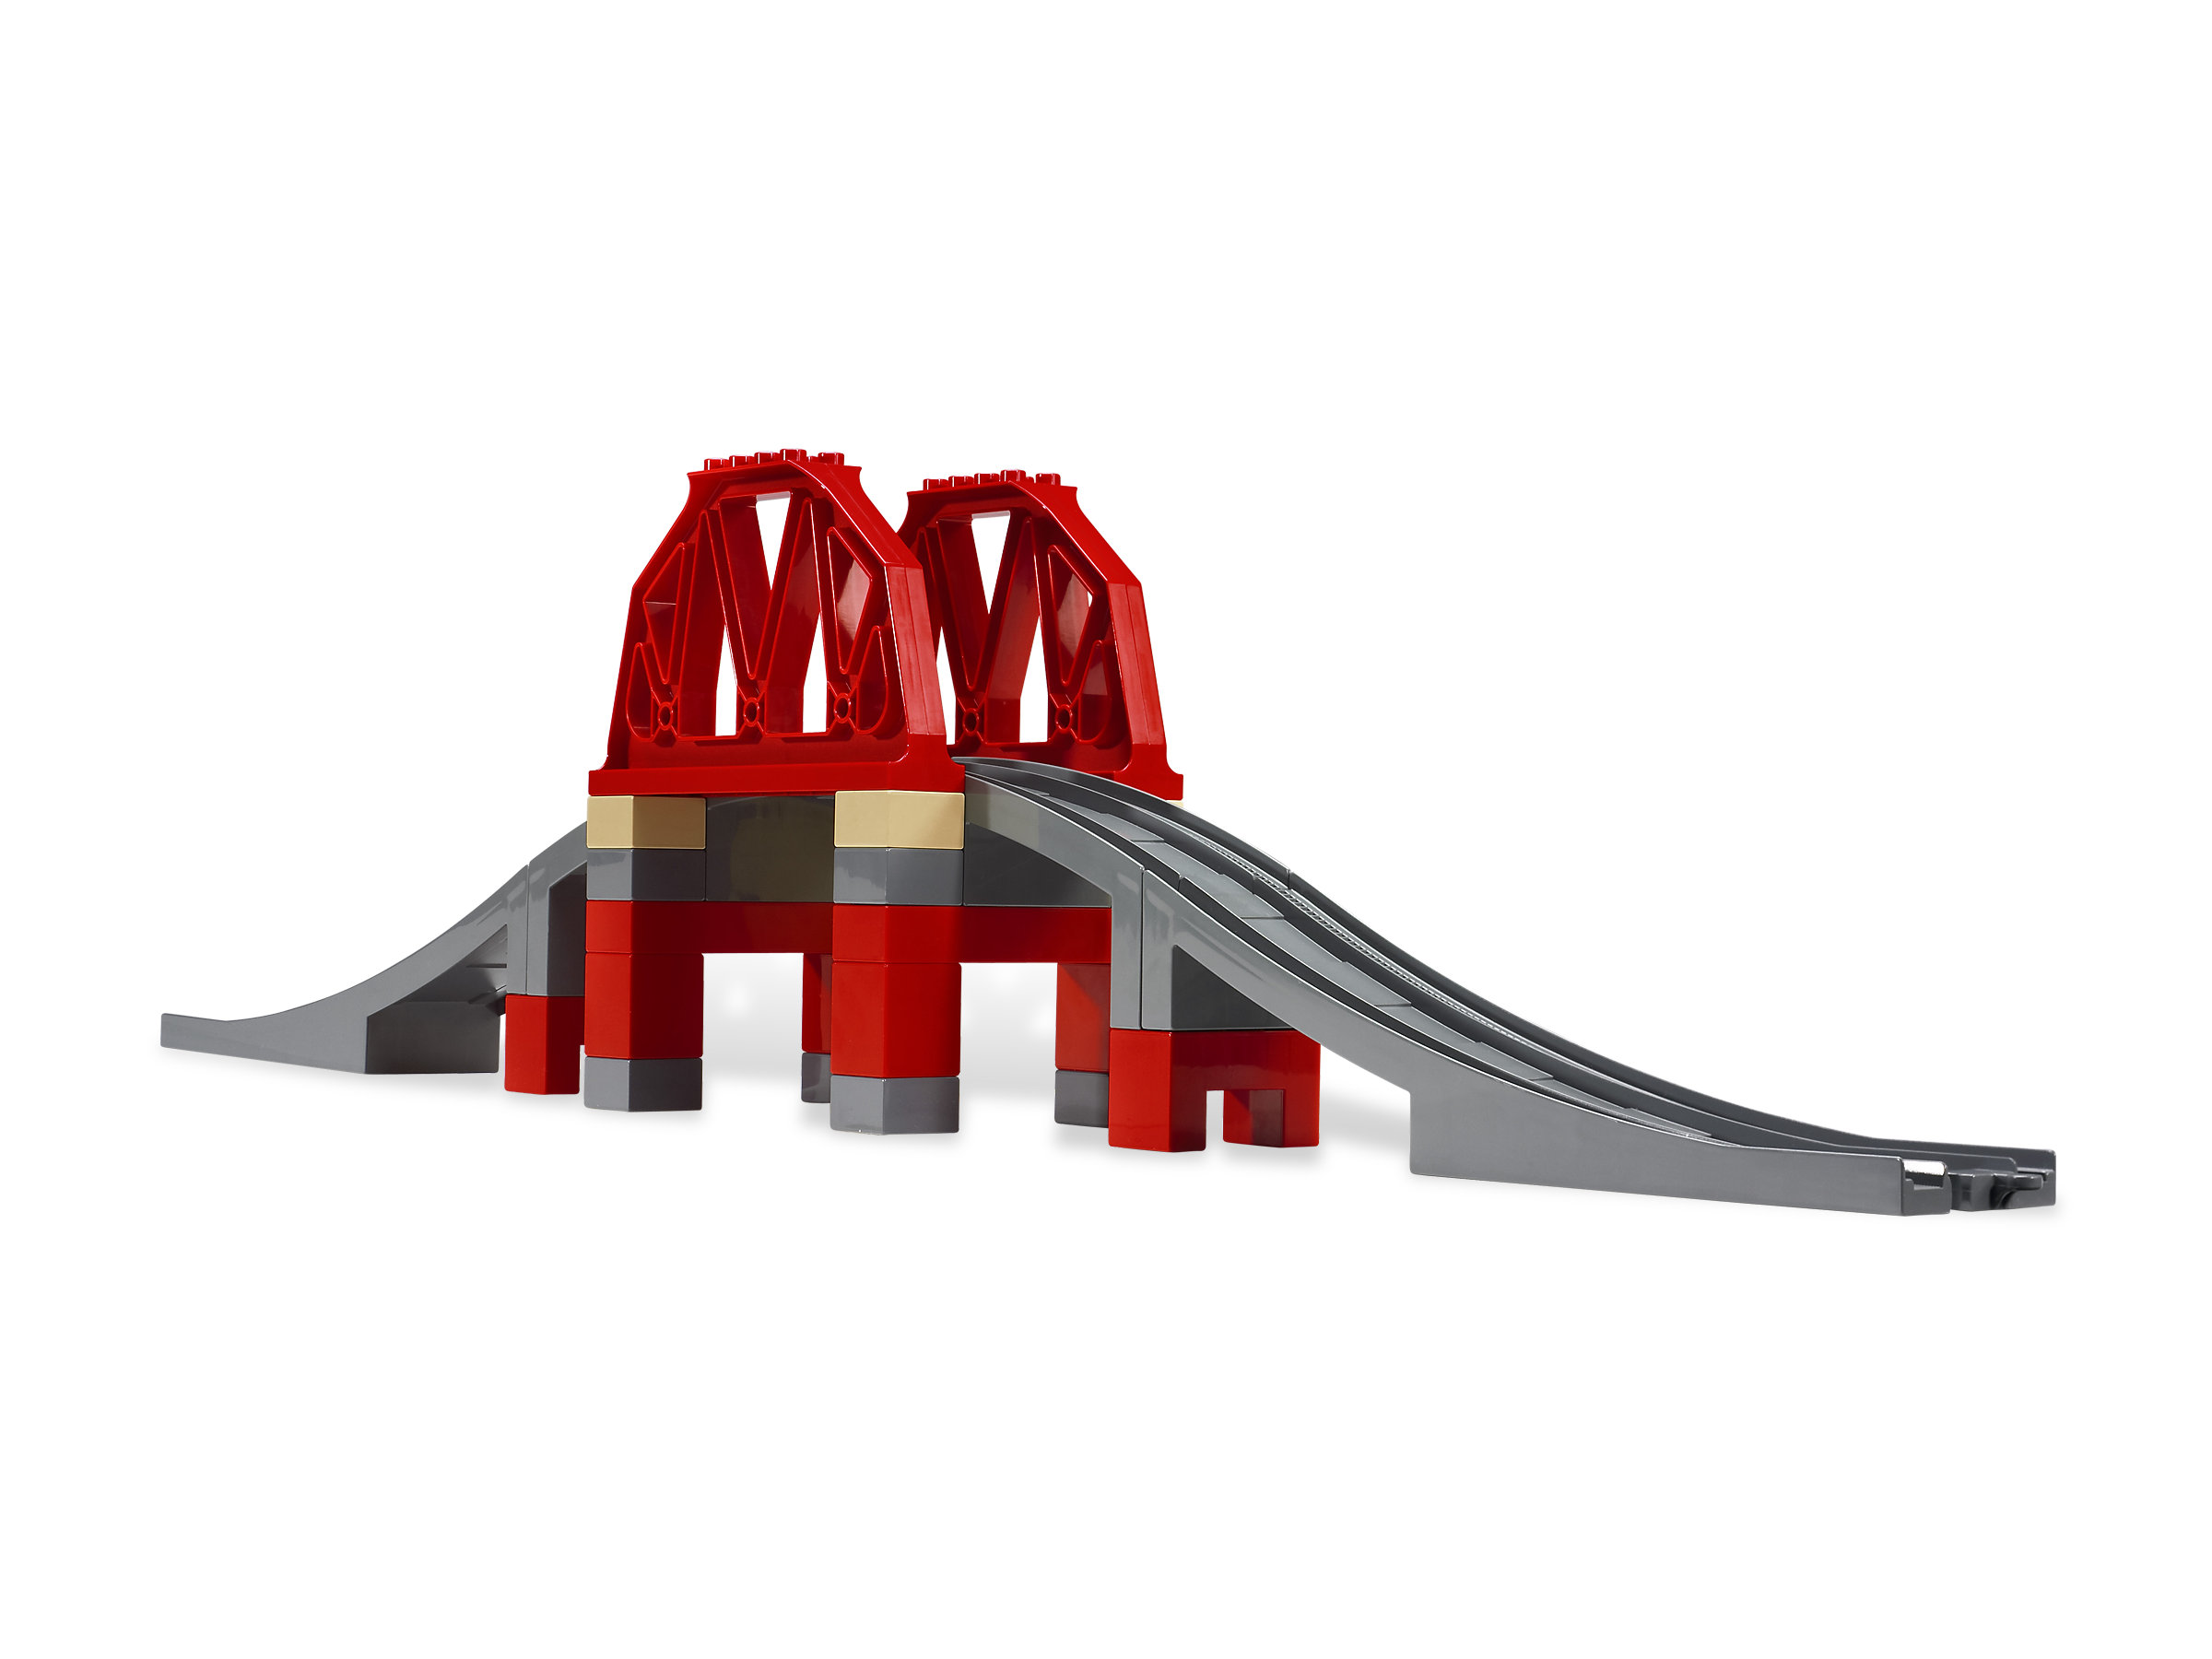 1x Lego Duplo Support Red Grid Rack Stand Bridge Pillar 3774 9212 51559